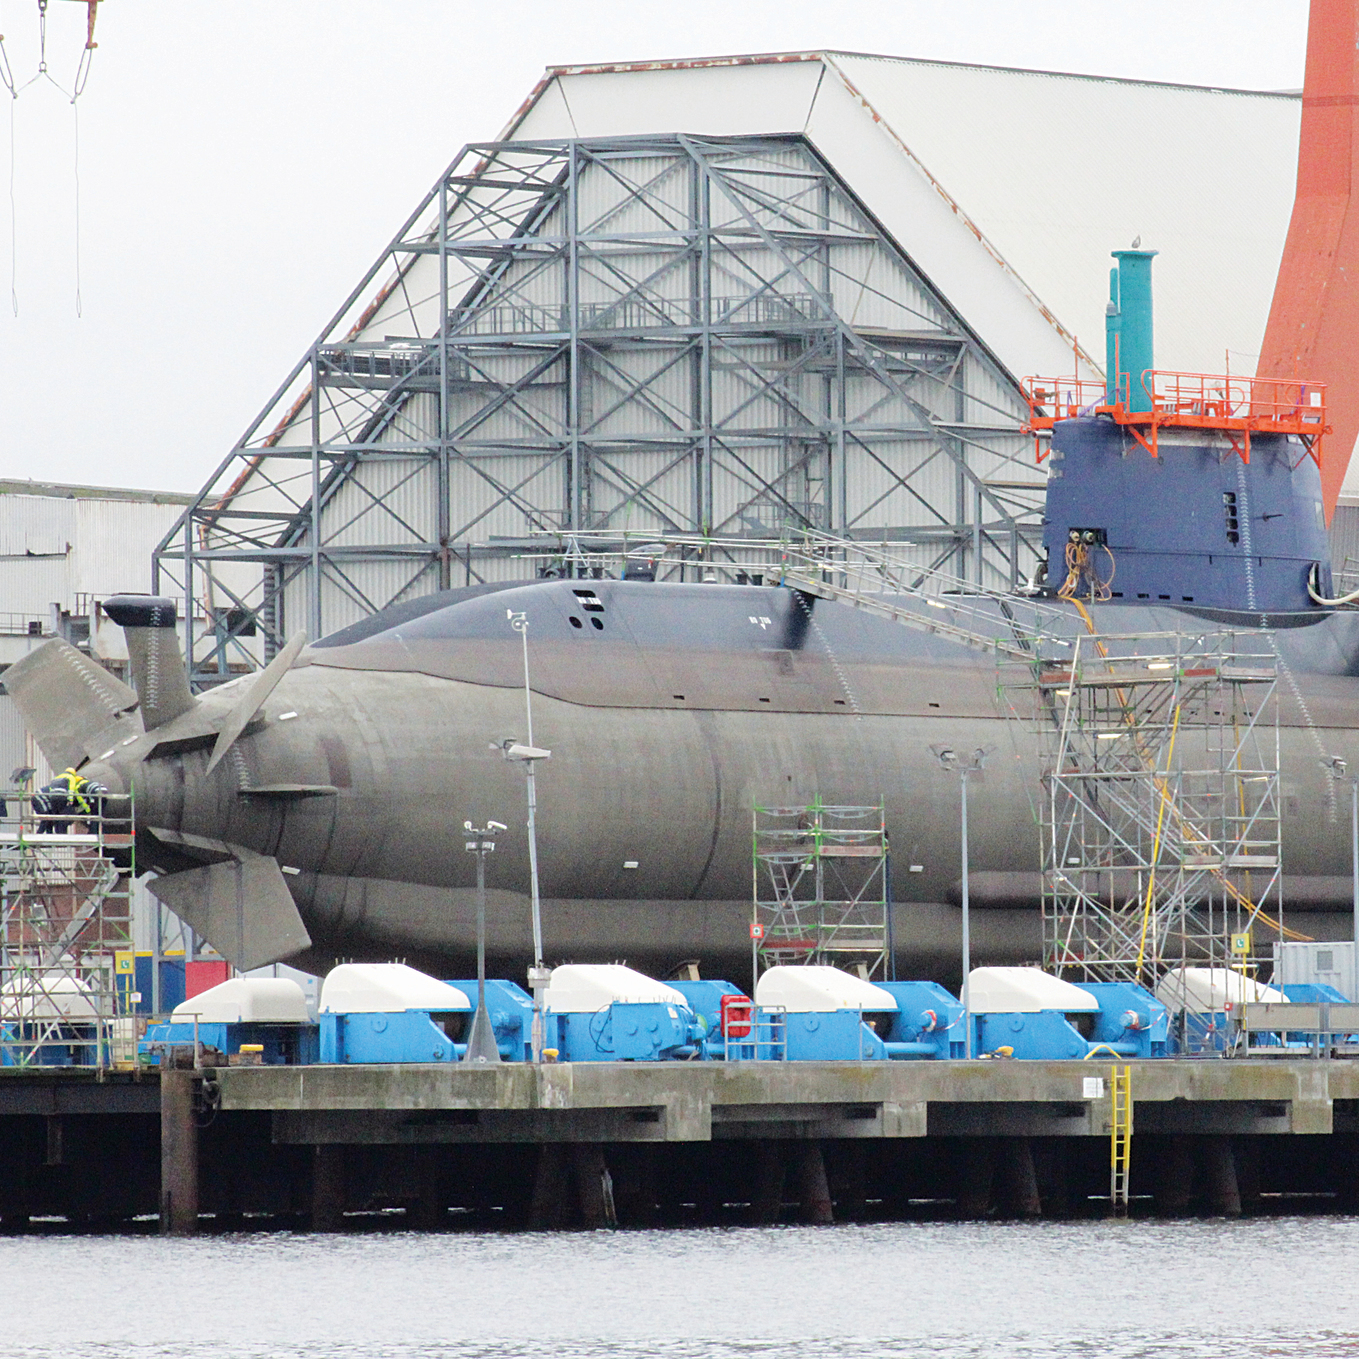 הצוללת אח"י רהב בעת בנייתה במספנה השייכת לטיסנקרופ, 2013. “אלה סודות מדינה" | צילום: אי-פי-אי